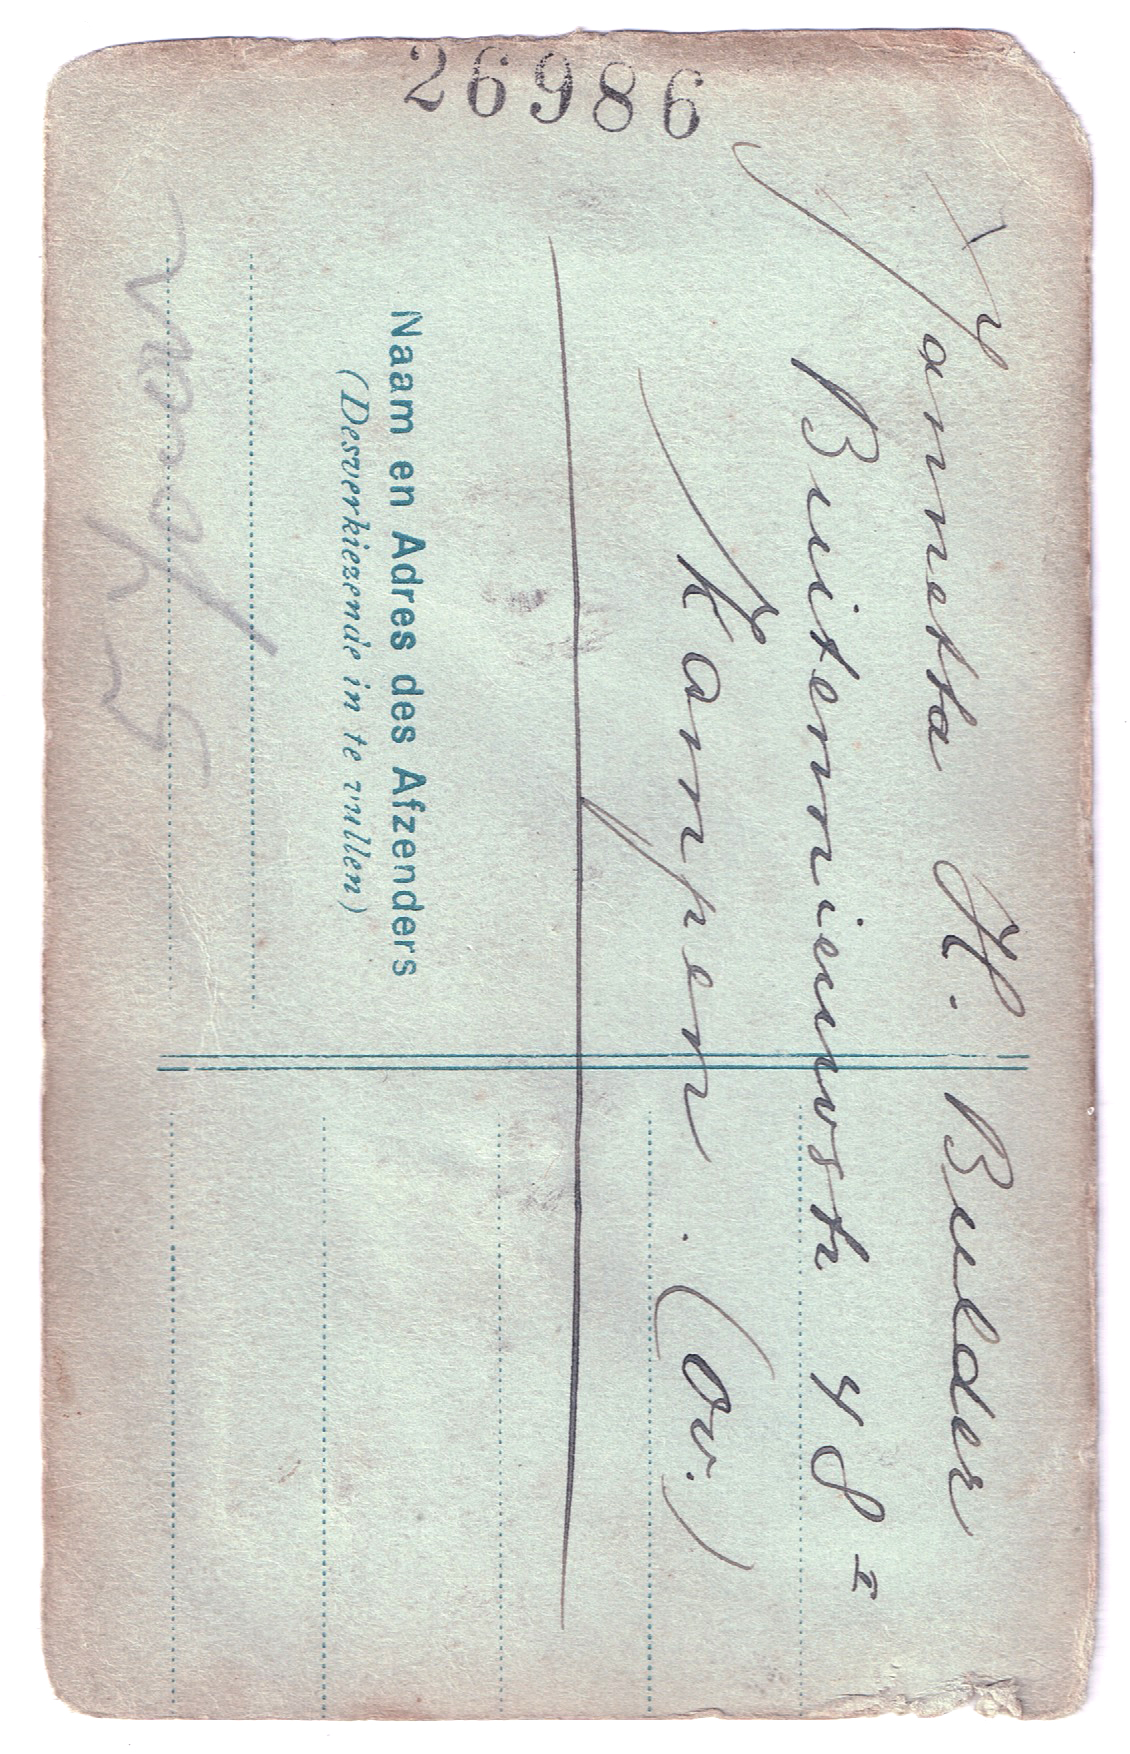 Foto. Jannetta Hendrika Bulder, ca. 1916, achterzijde met handschrift.